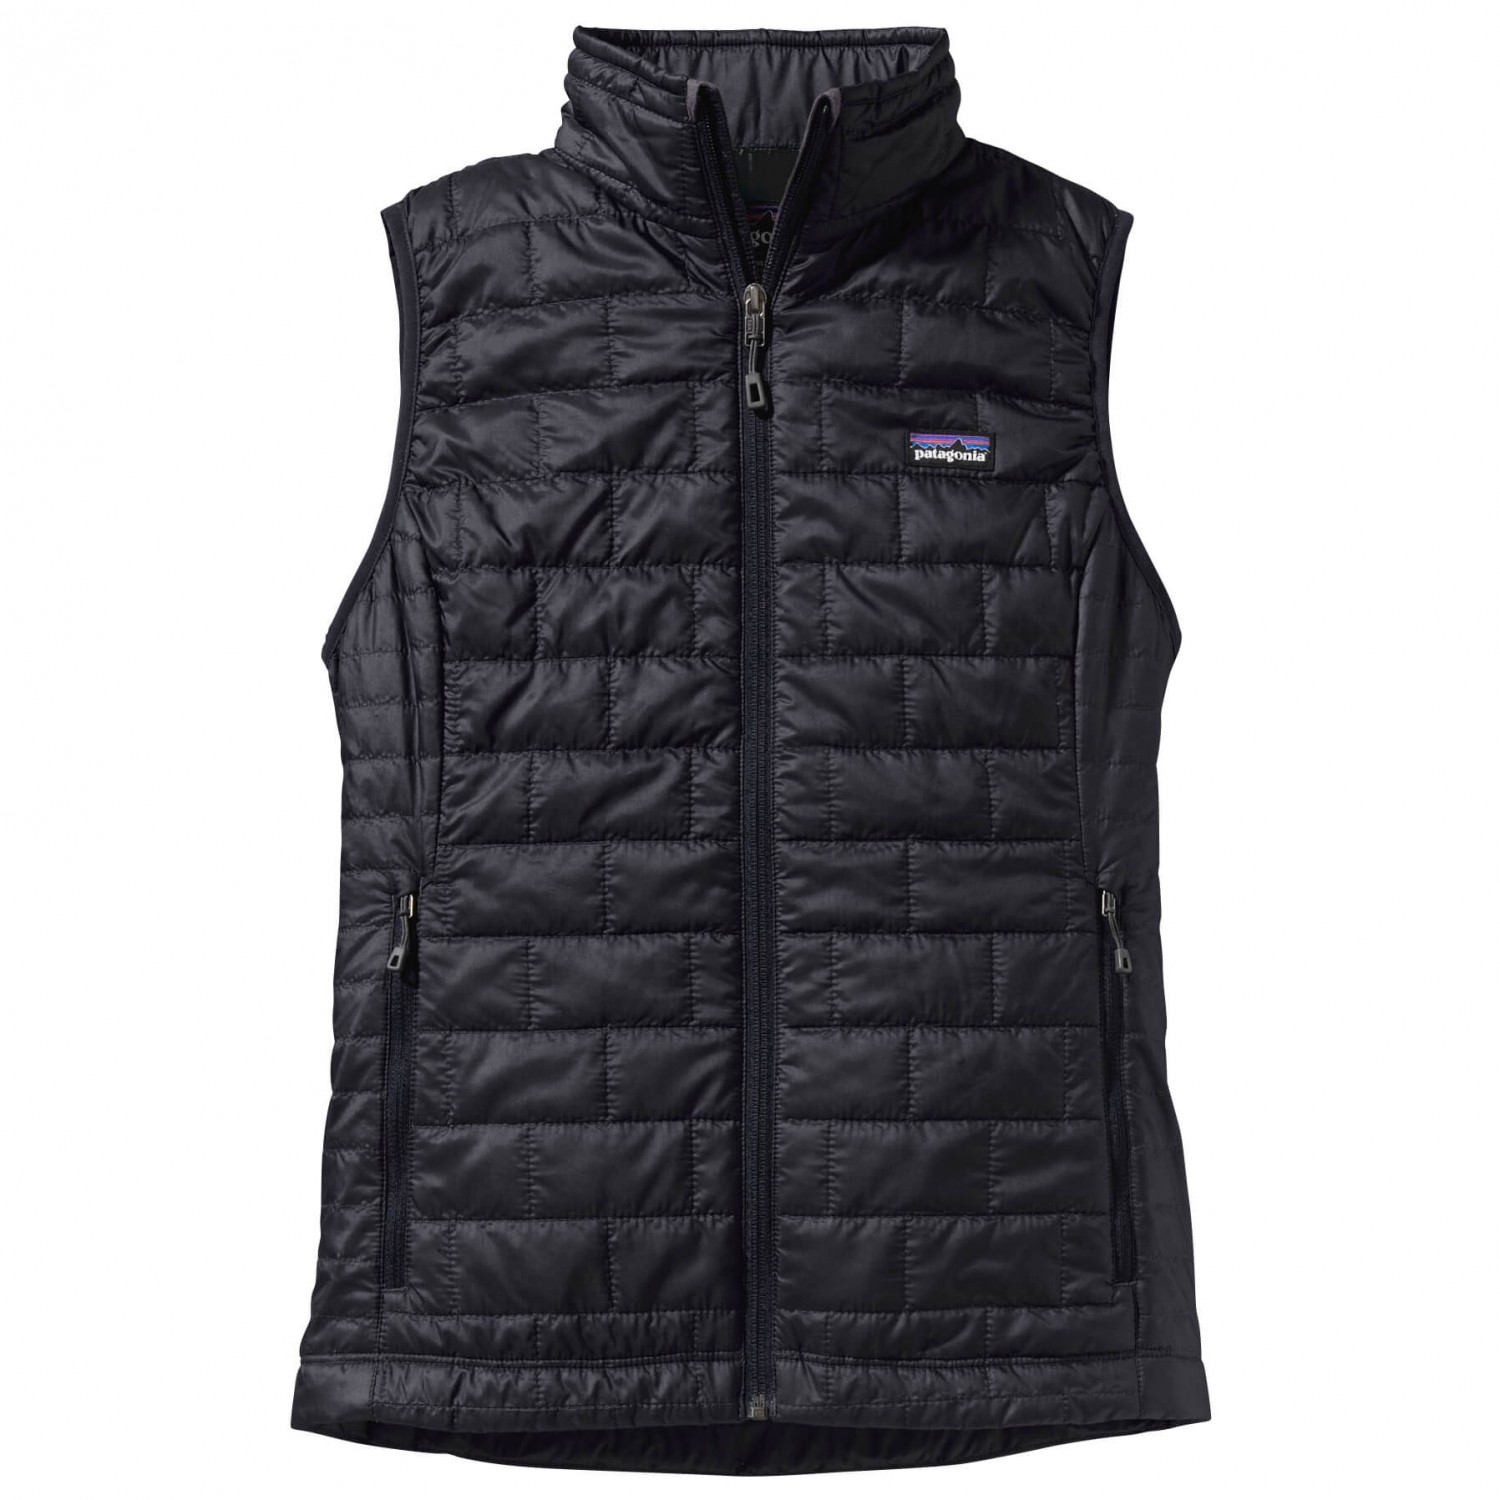 Жилет из синтетического волокна Patagonia Women's Nano Puff Vest, черный жилет siksilk cropped vest черный